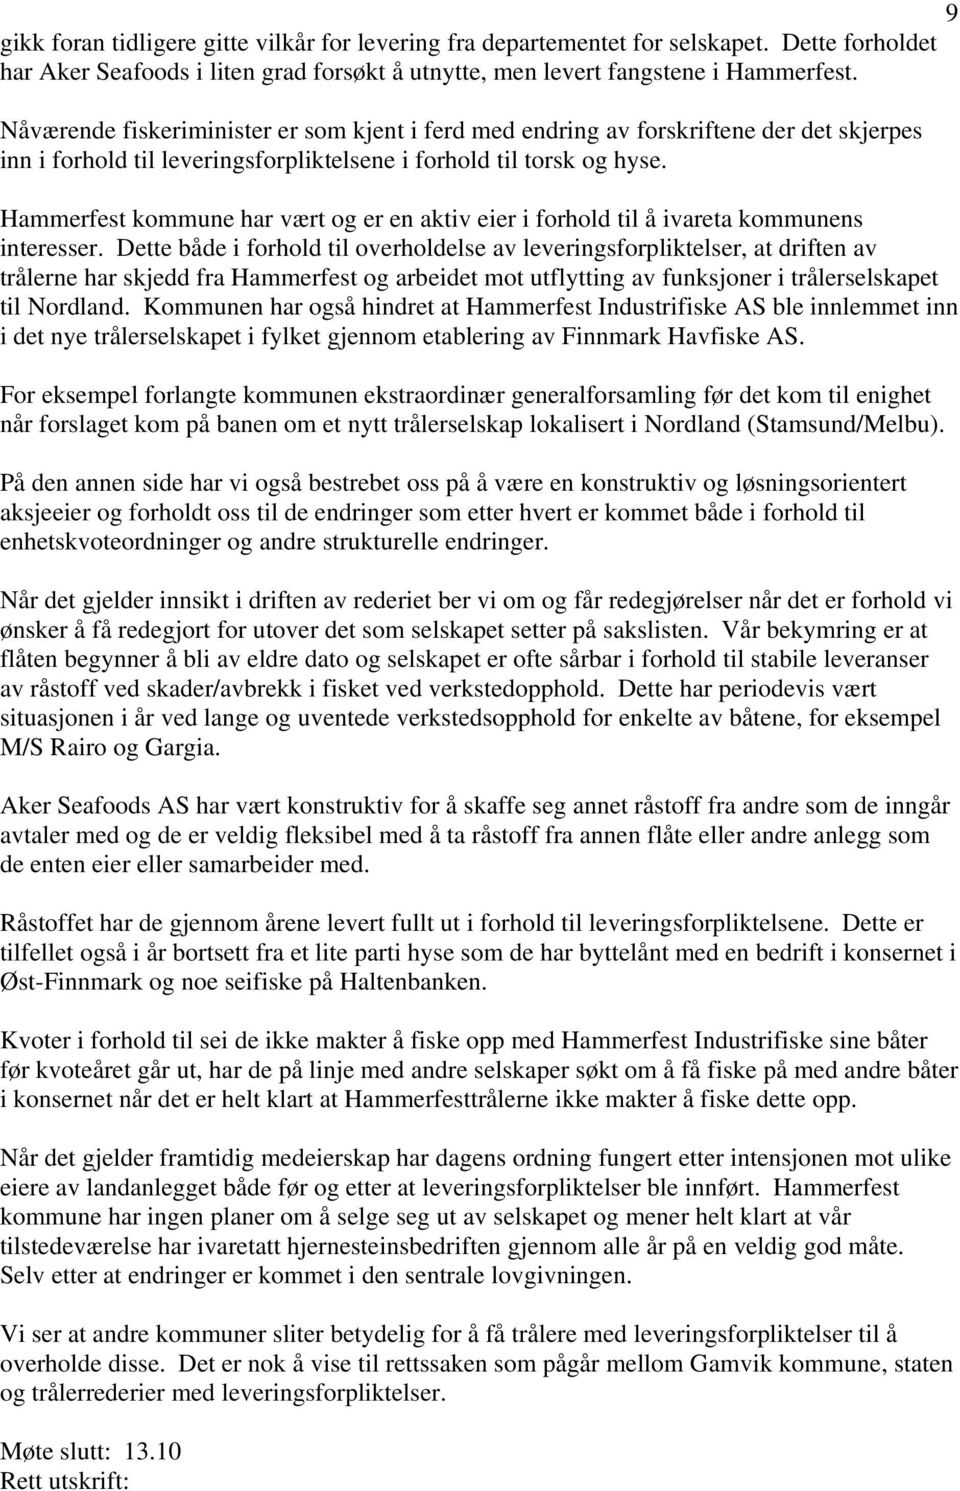 Hammerfest kommune har vært og er en aktiv eier i forhold til å ivareta kommunens interesser.